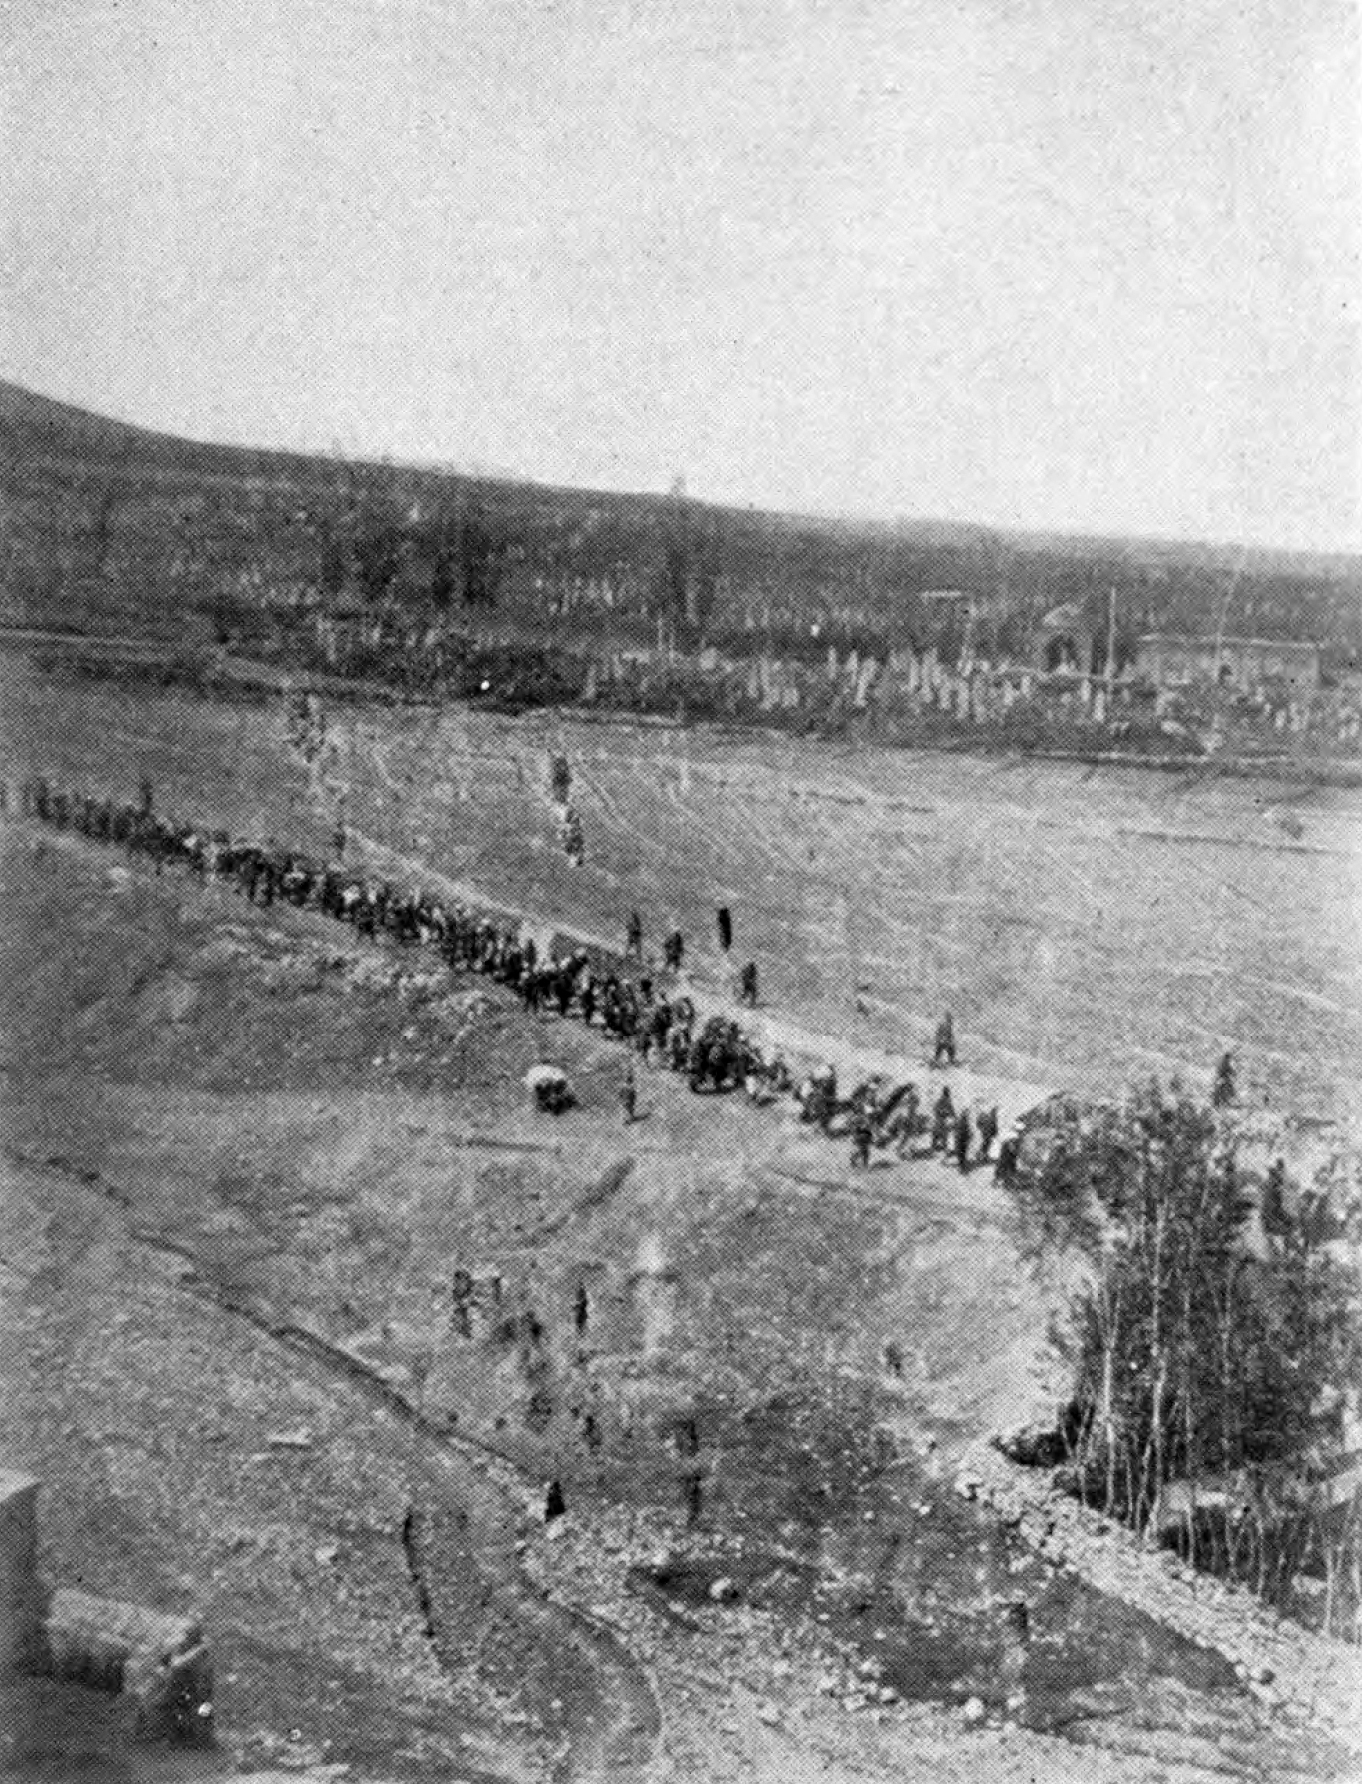 Column_of_deportees_walking_through_Harput_vilayet_during_the_Armenian_genocide.jpg